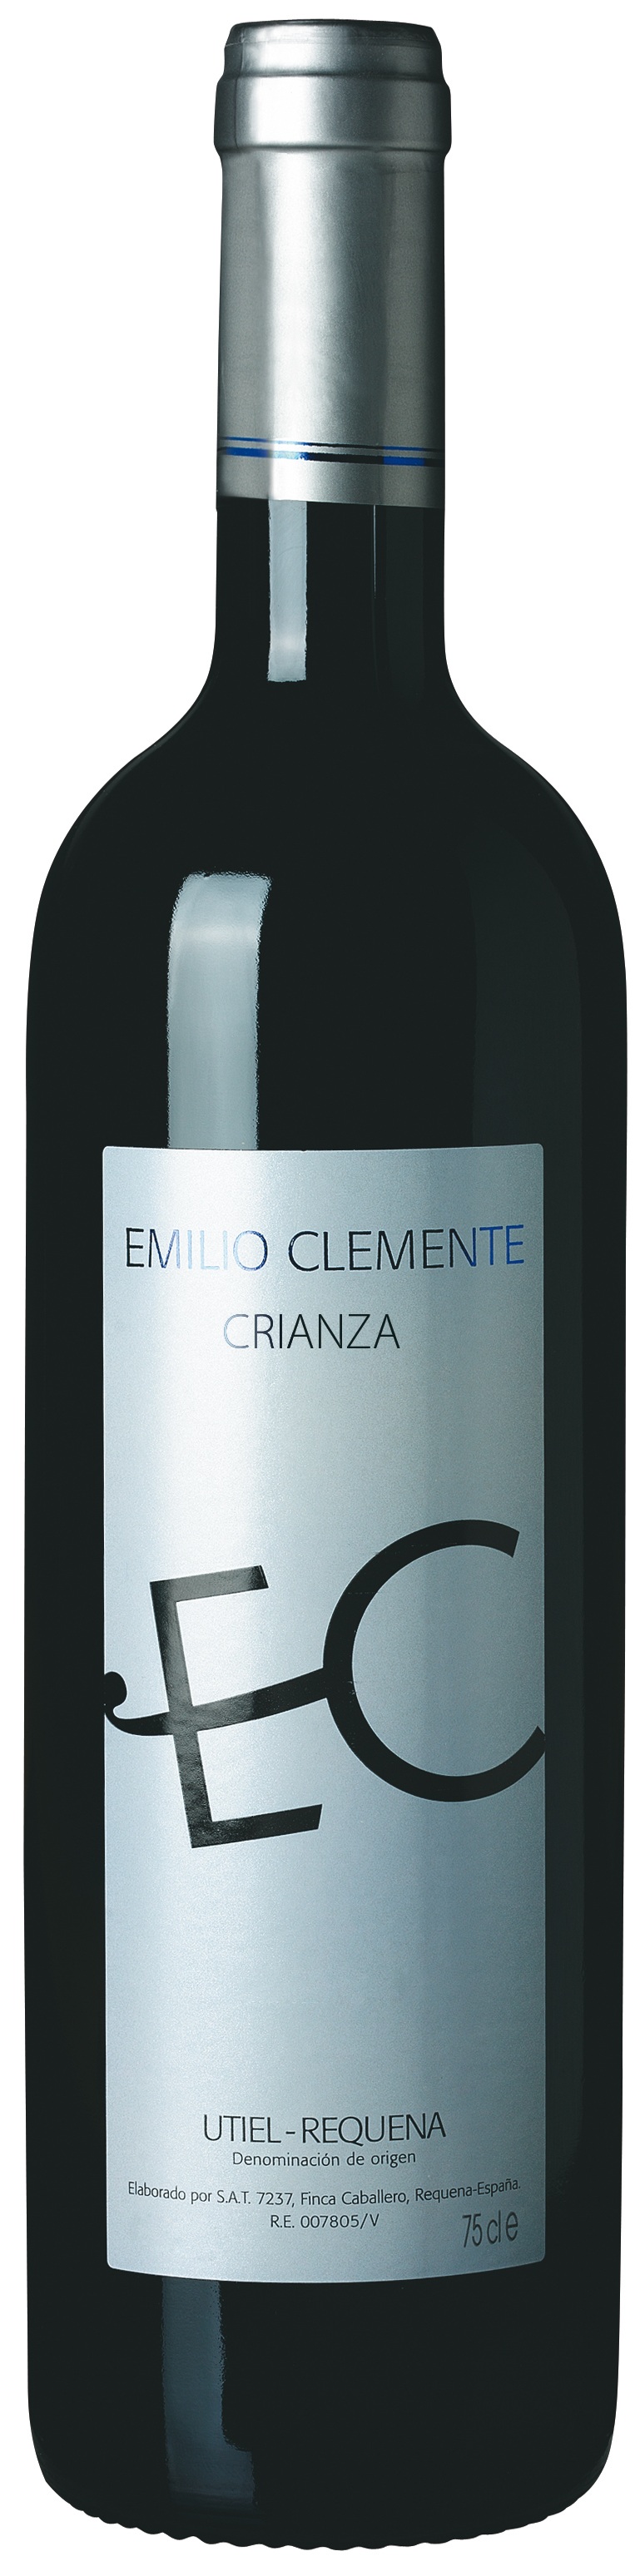 Logo del vino Emilio Clemente Crianza